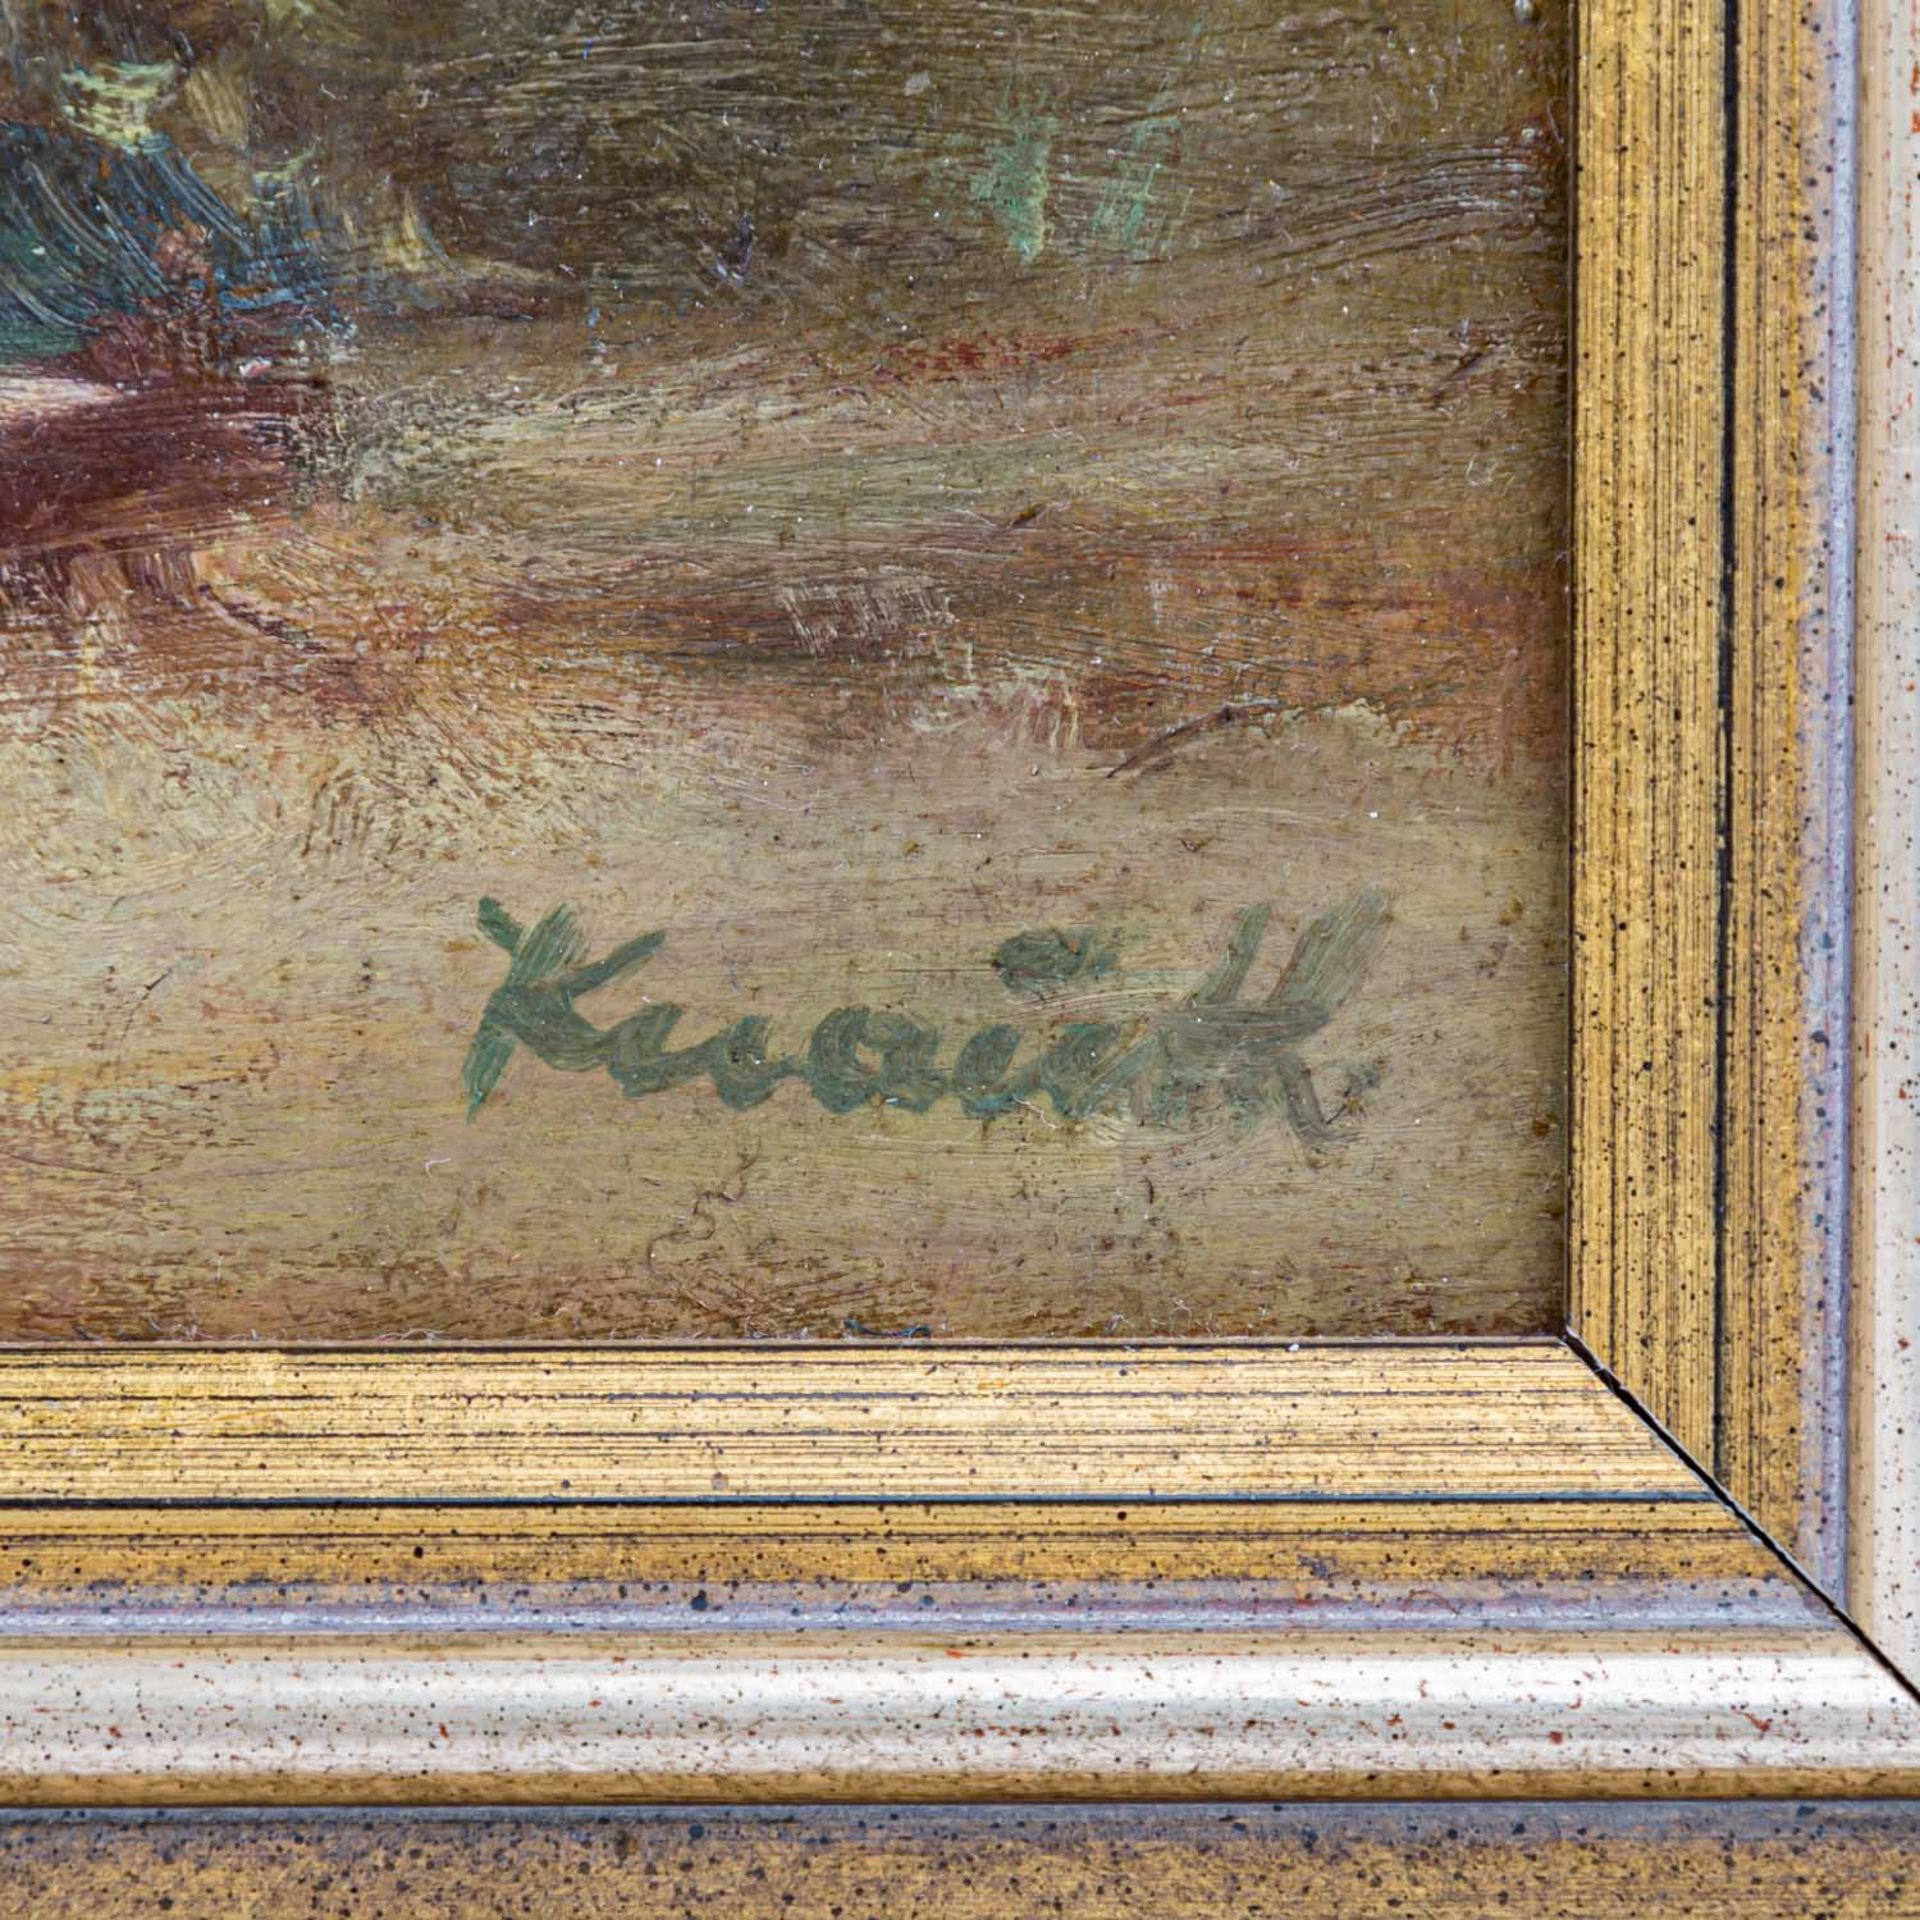 KNAUTH, ANNA (Münchner Malerin 20. Jh.), "Parklandschaft",barocke Treppenanlage unter Bäumen, u. - Bild 3 aus 4